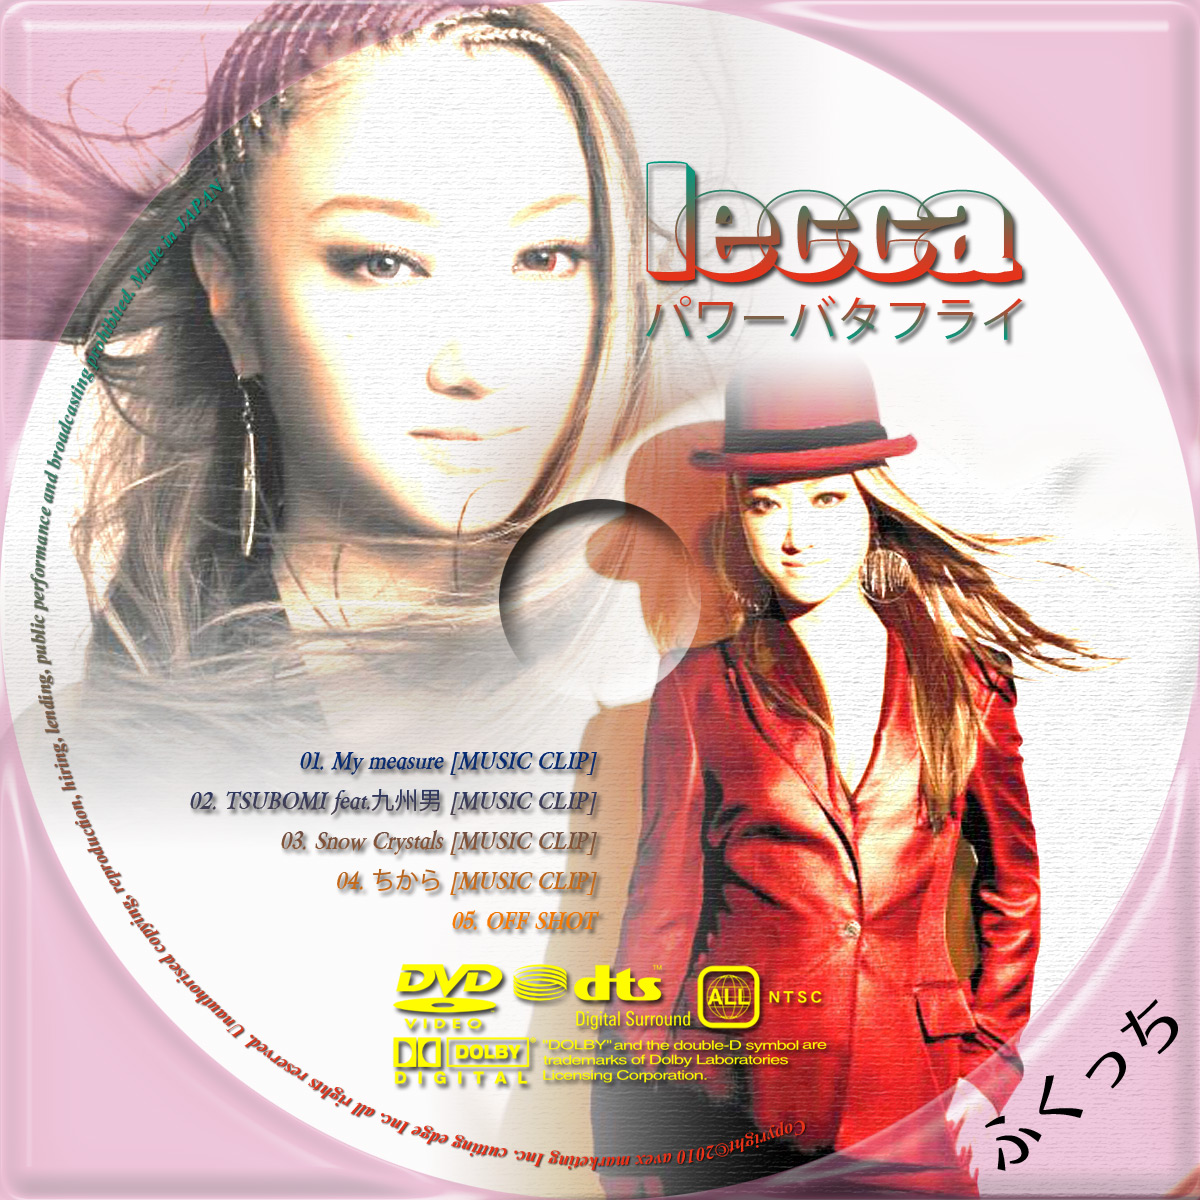 ふくっちの音楽CD/DVDカスタムレーベル lecca - パワーバタフライ